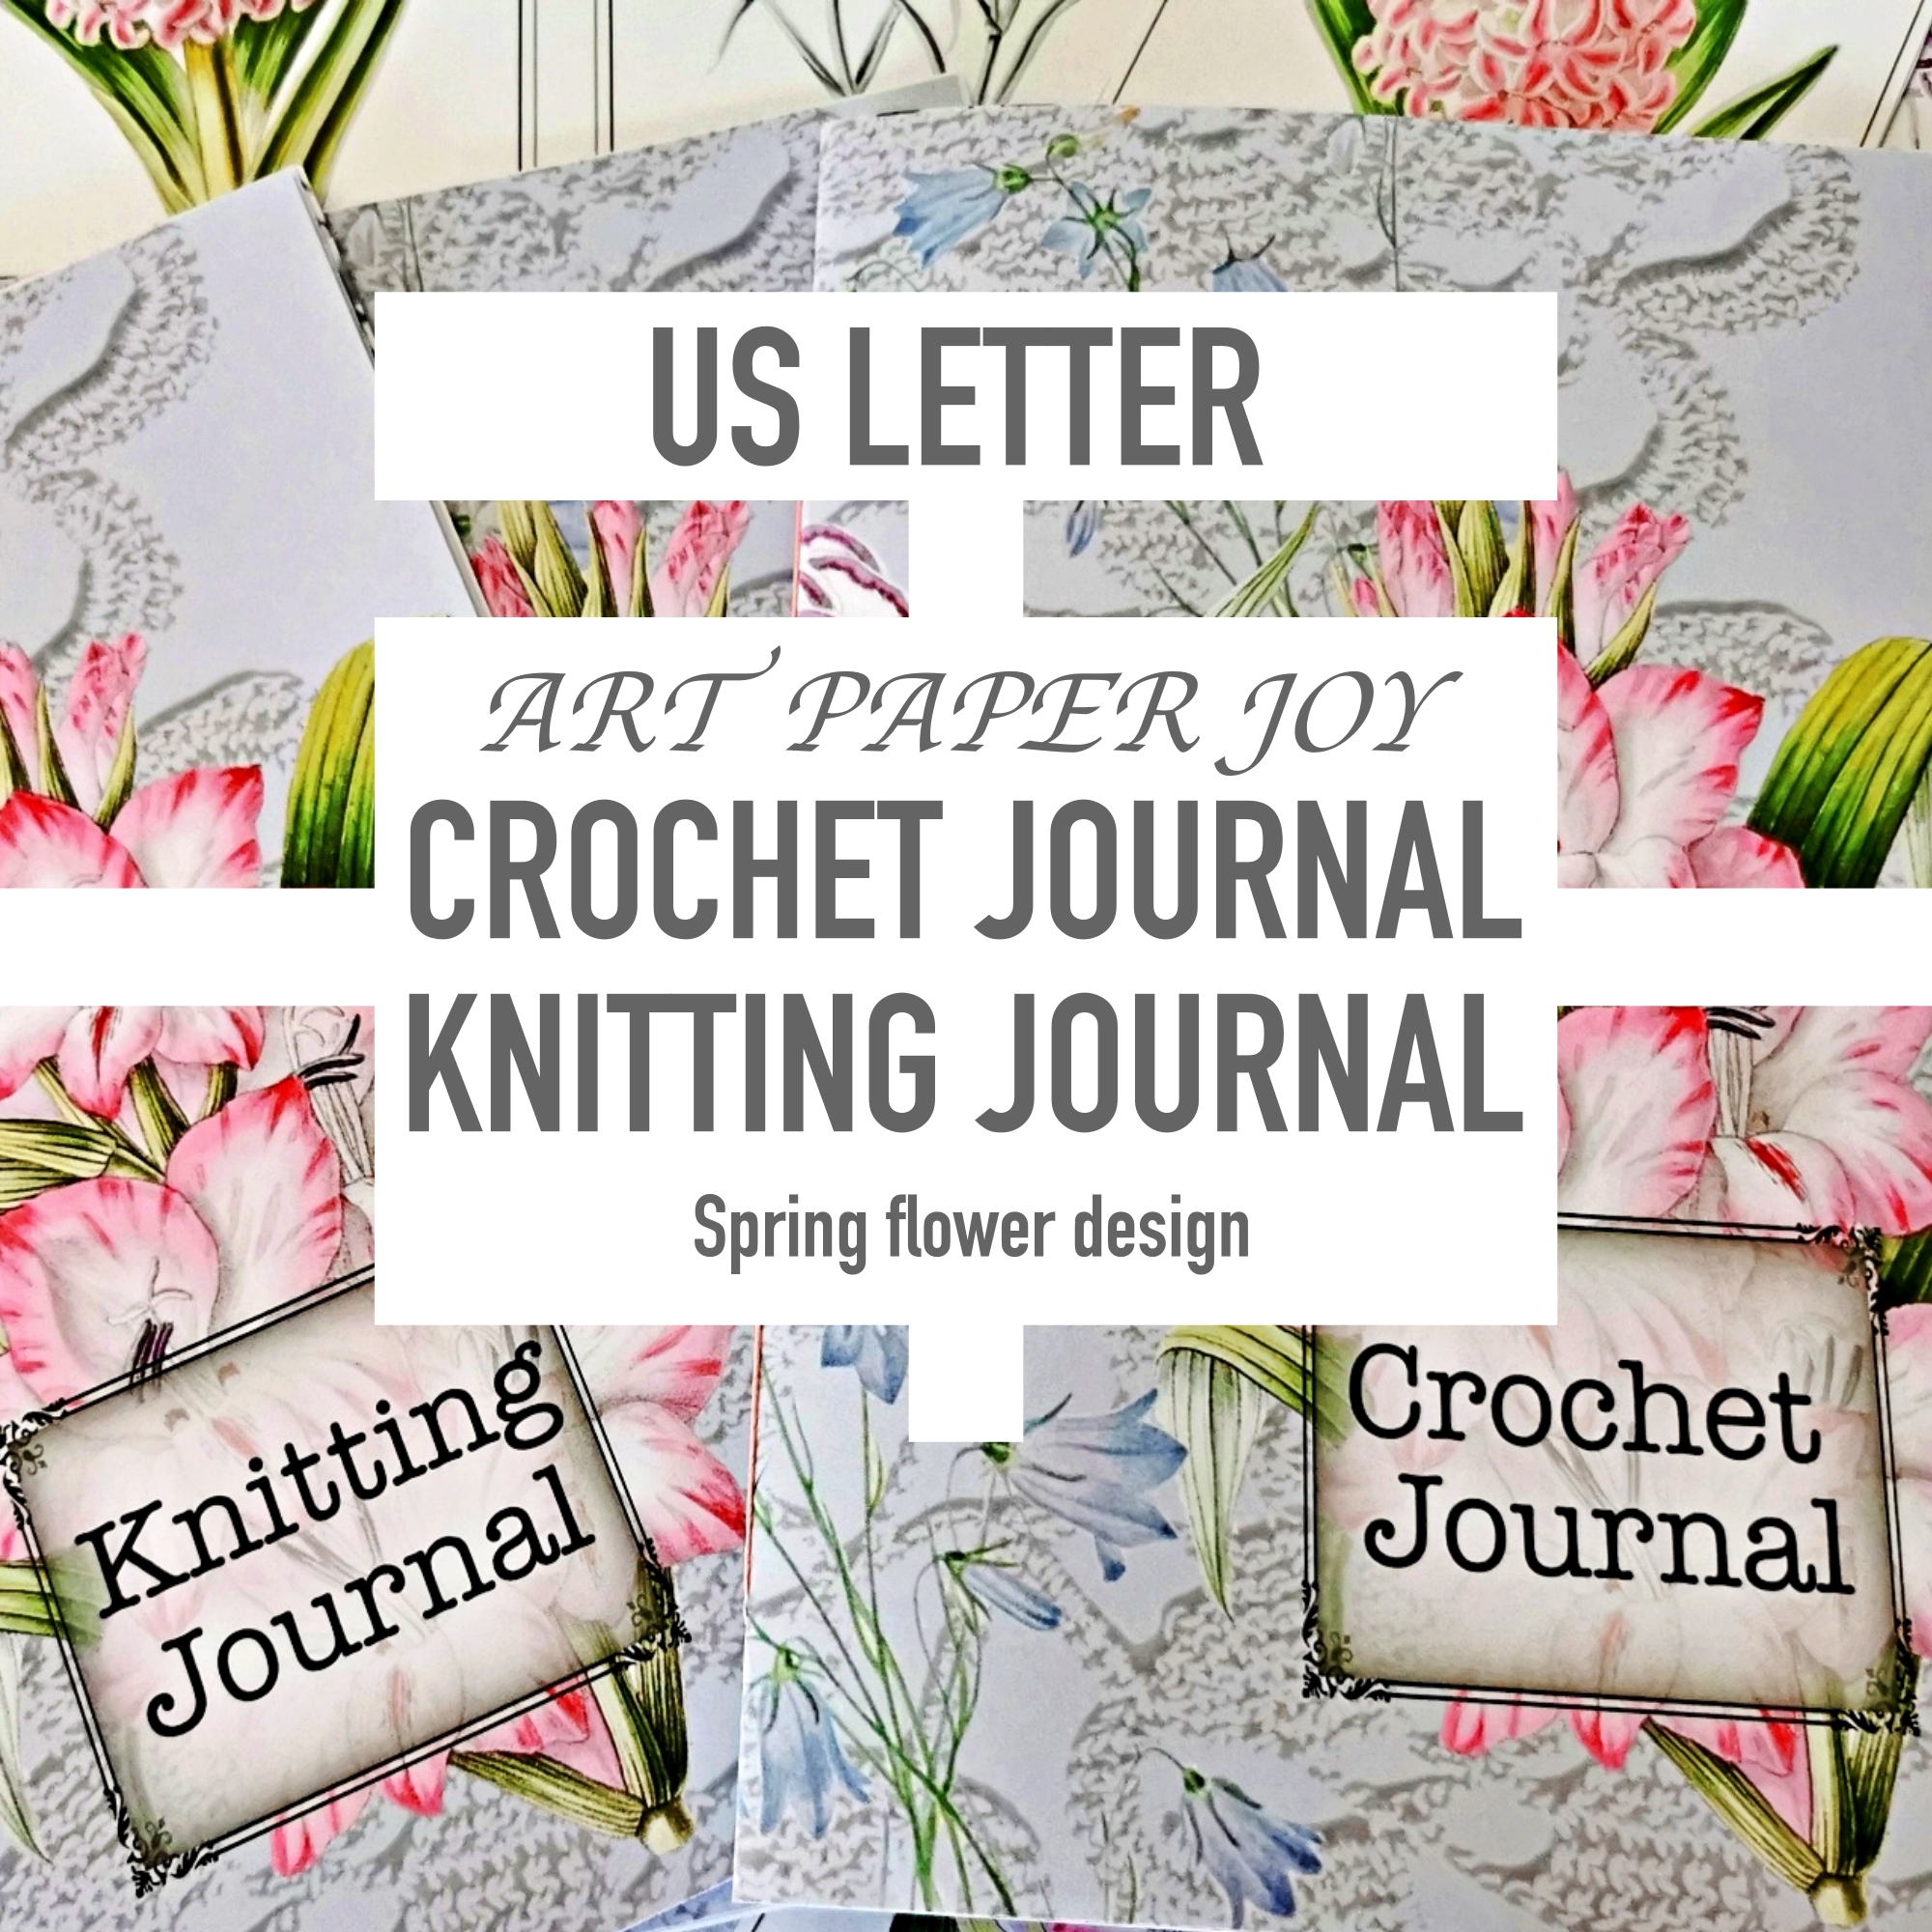 US letter Crochet Knitting journal kit